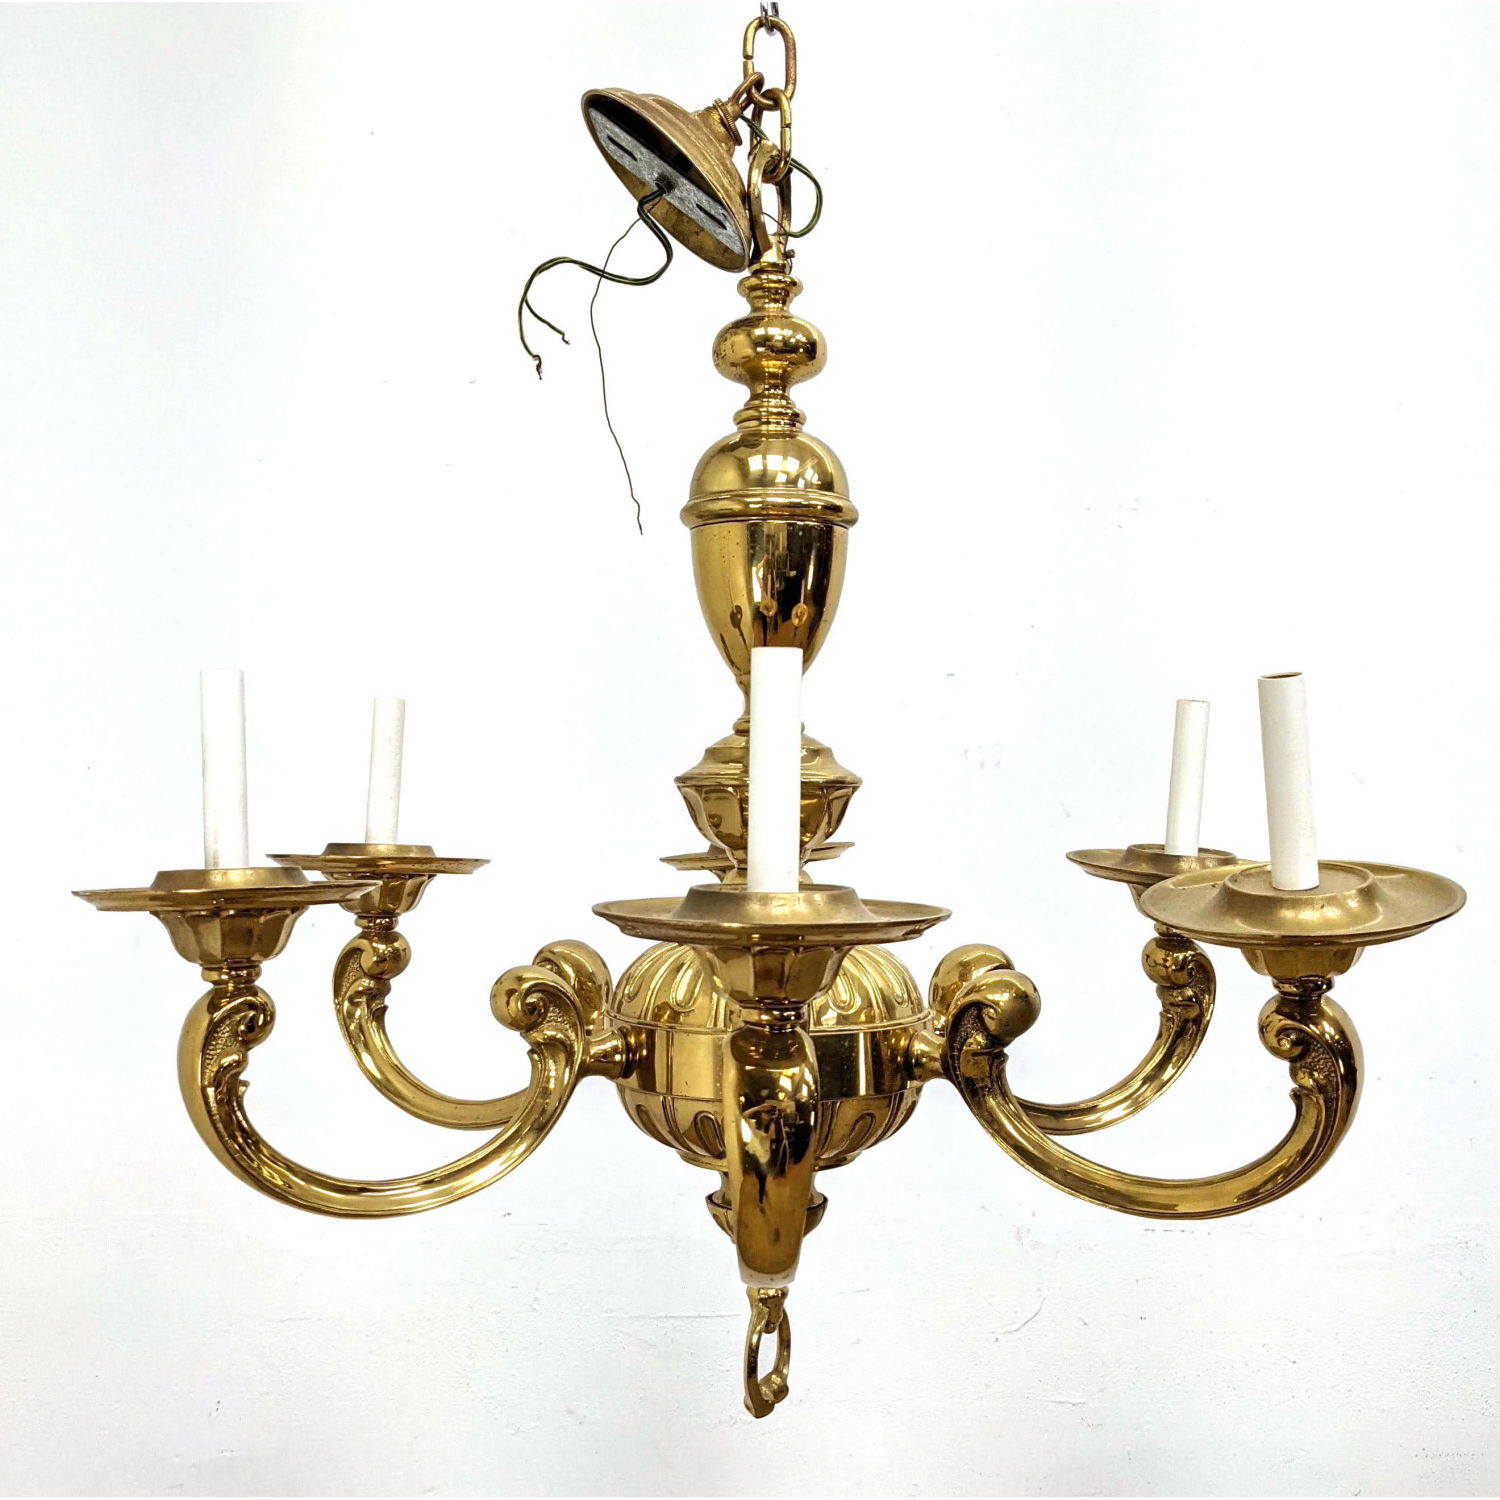 Heavy Brass Chandelier Lamp. 

Dimensions: